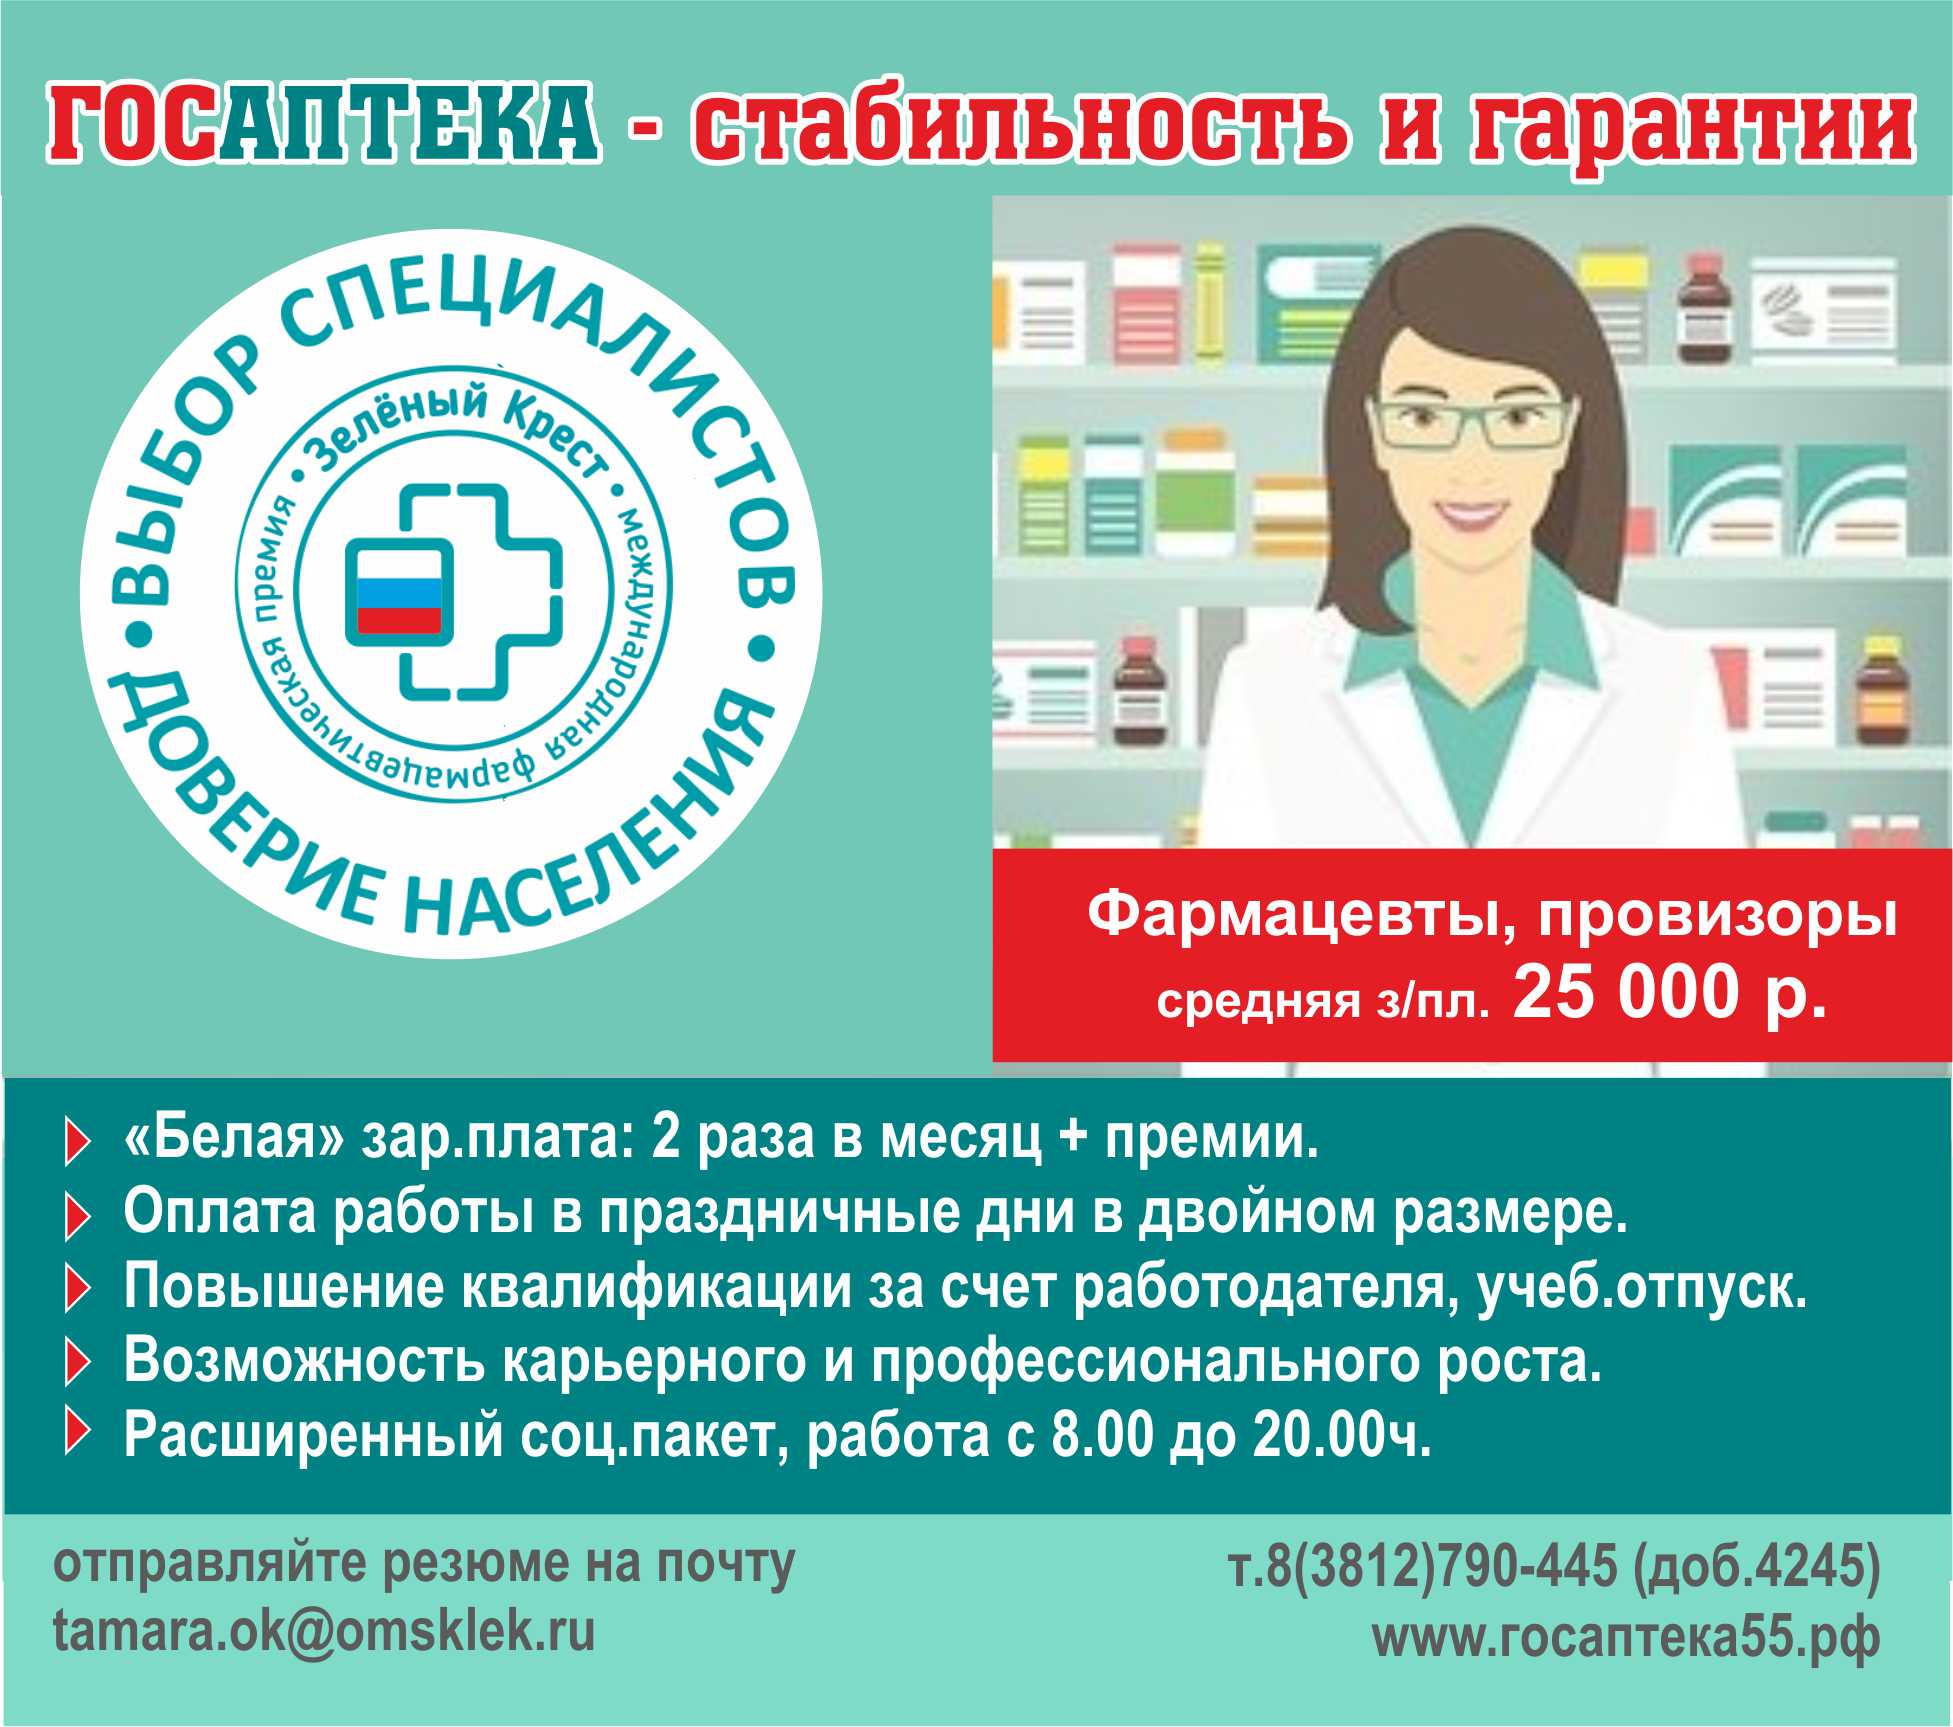 Аптечный Пункт Омск